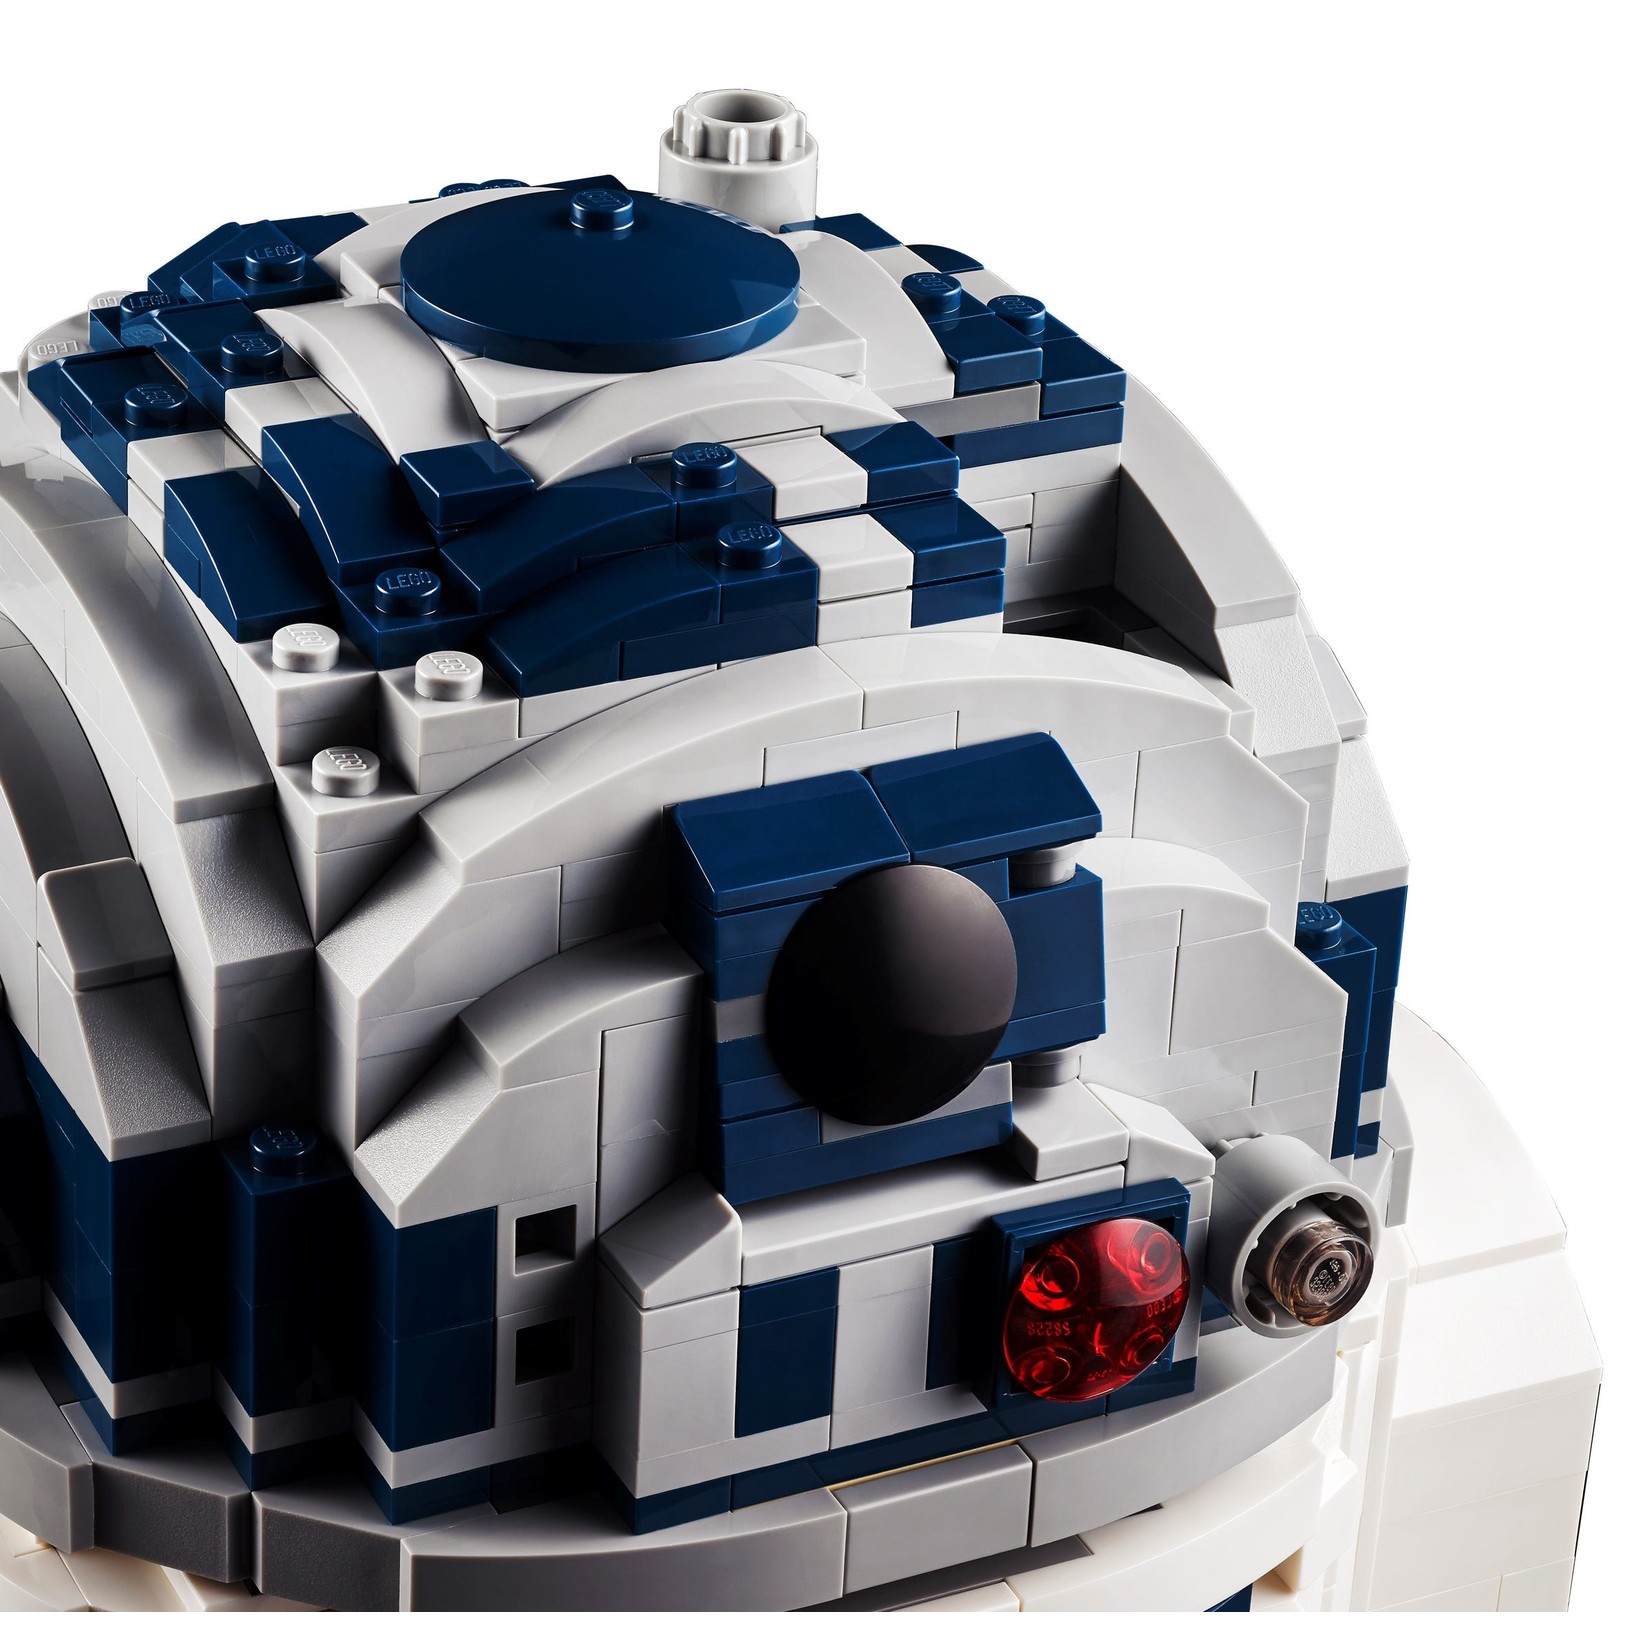 Lego Lego: R2-D2 75308